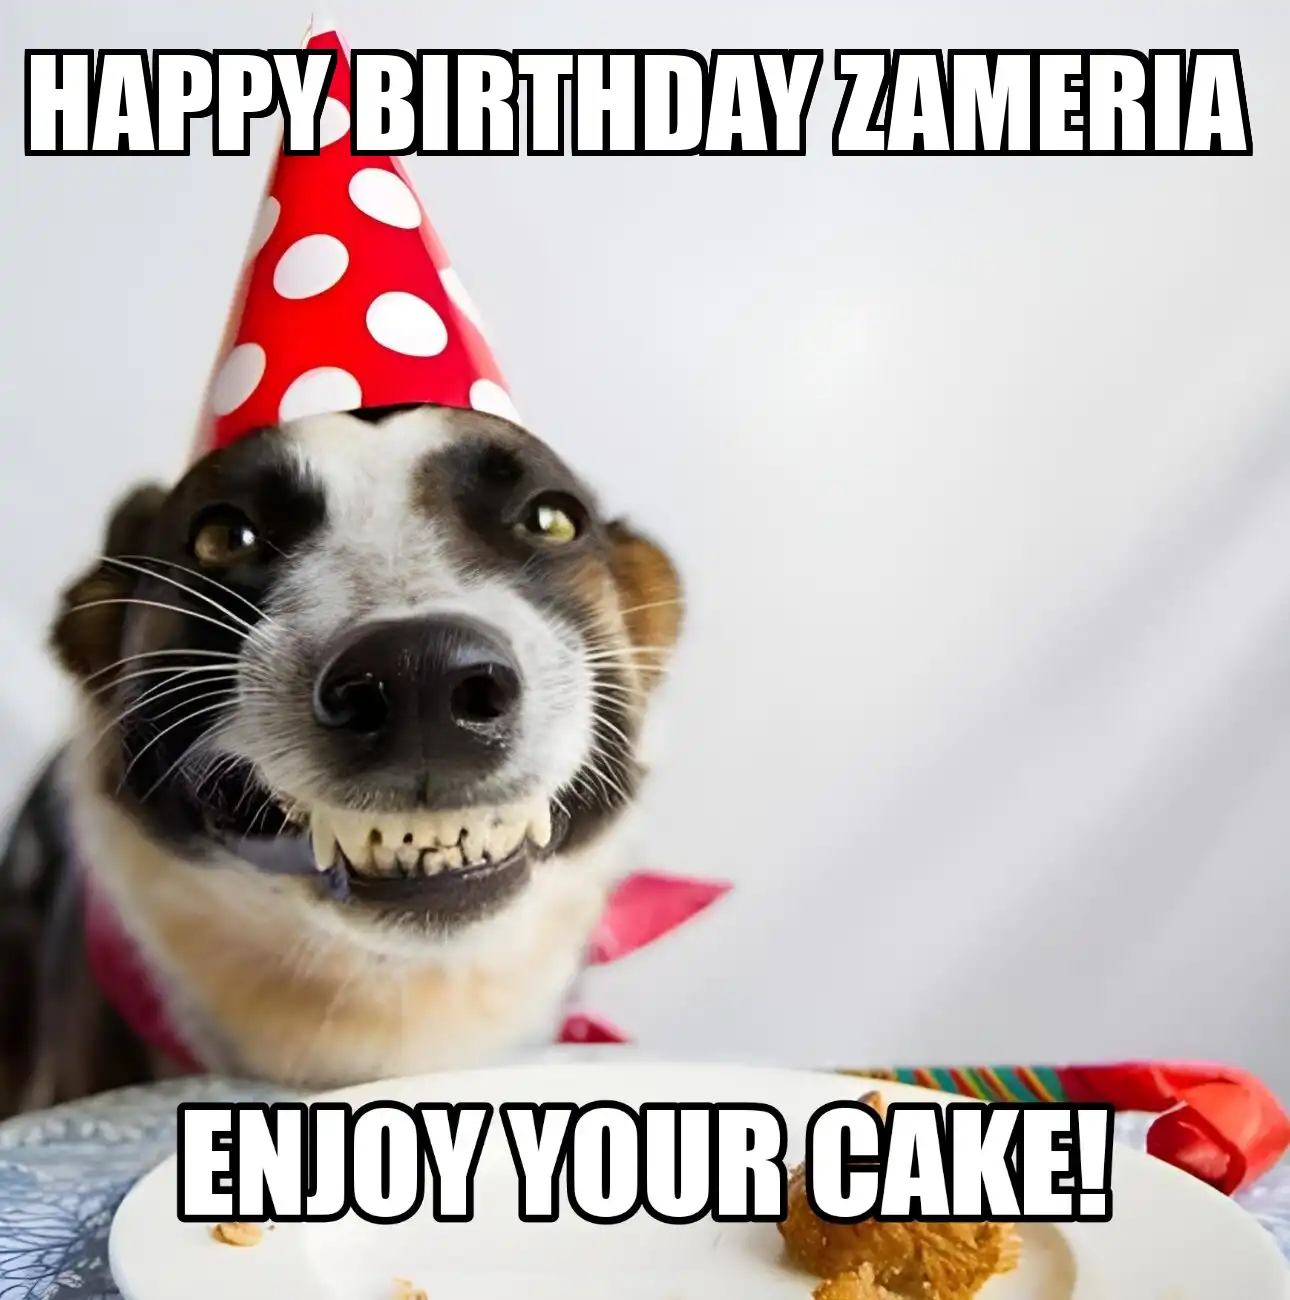 Happy Birthday Zameria Enjoy Your Cake Dog Meme